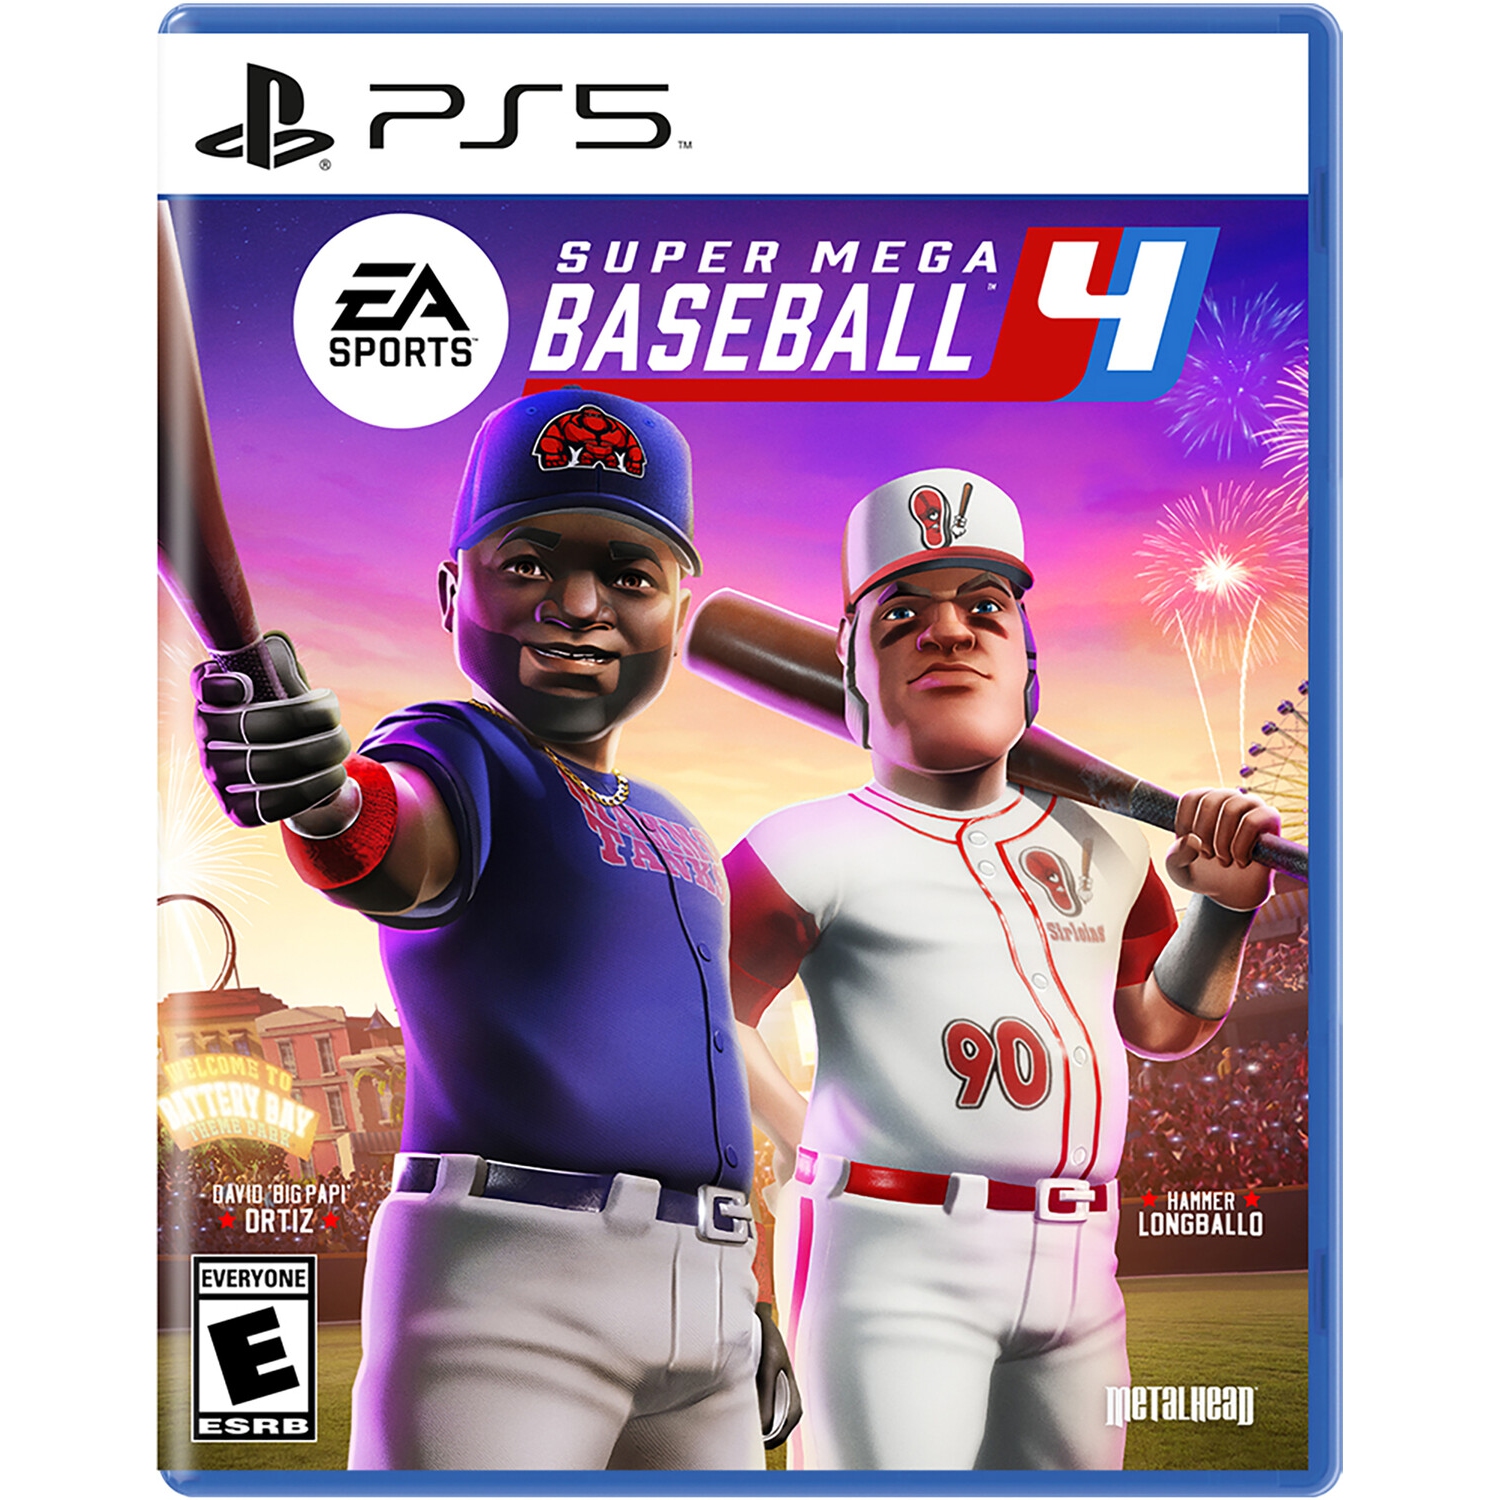 Super Mega Baseball 4 for PlayStation 5 [VIDEOGAMES]